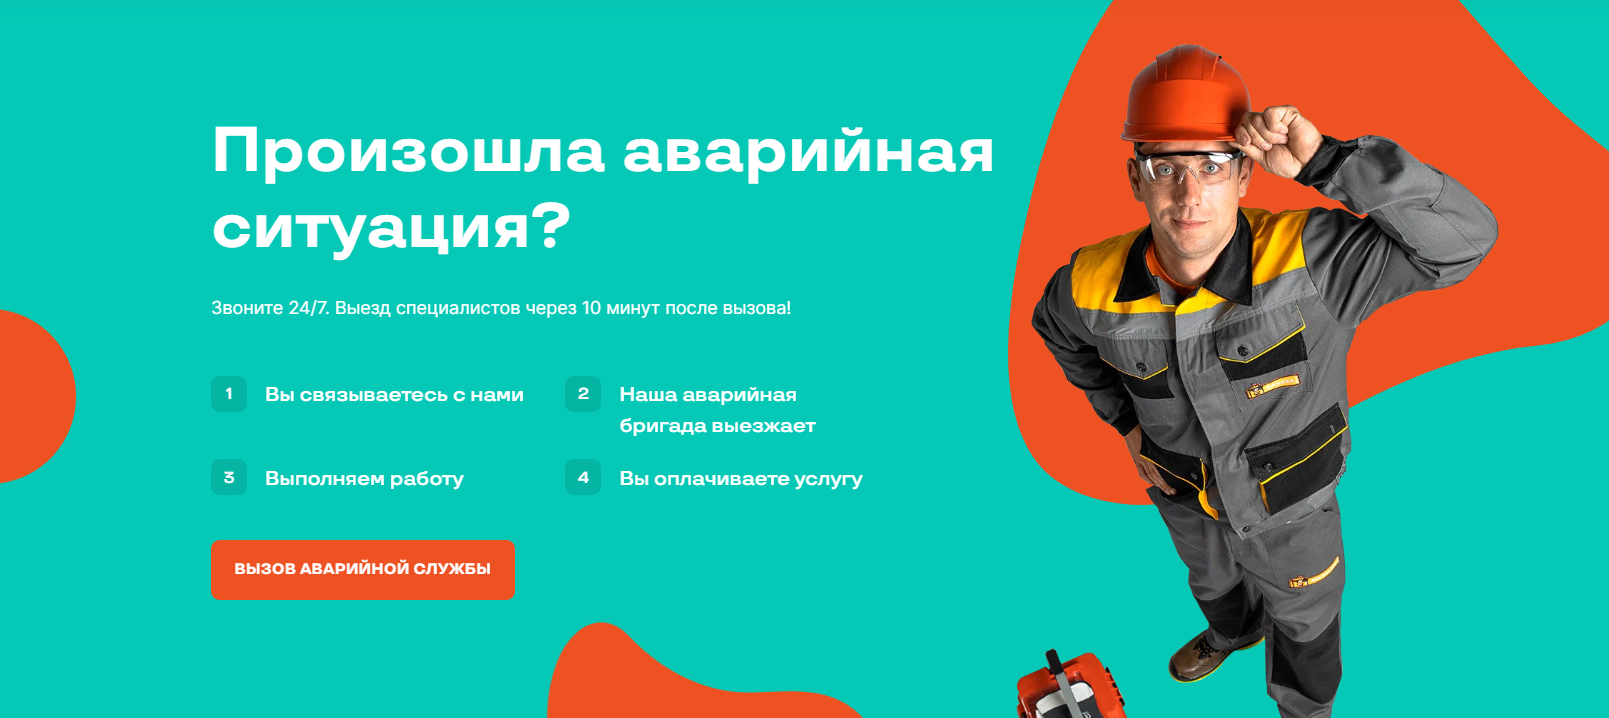 Как прочистить канализацию в Киеве: проверенный способ от BADAZA Group